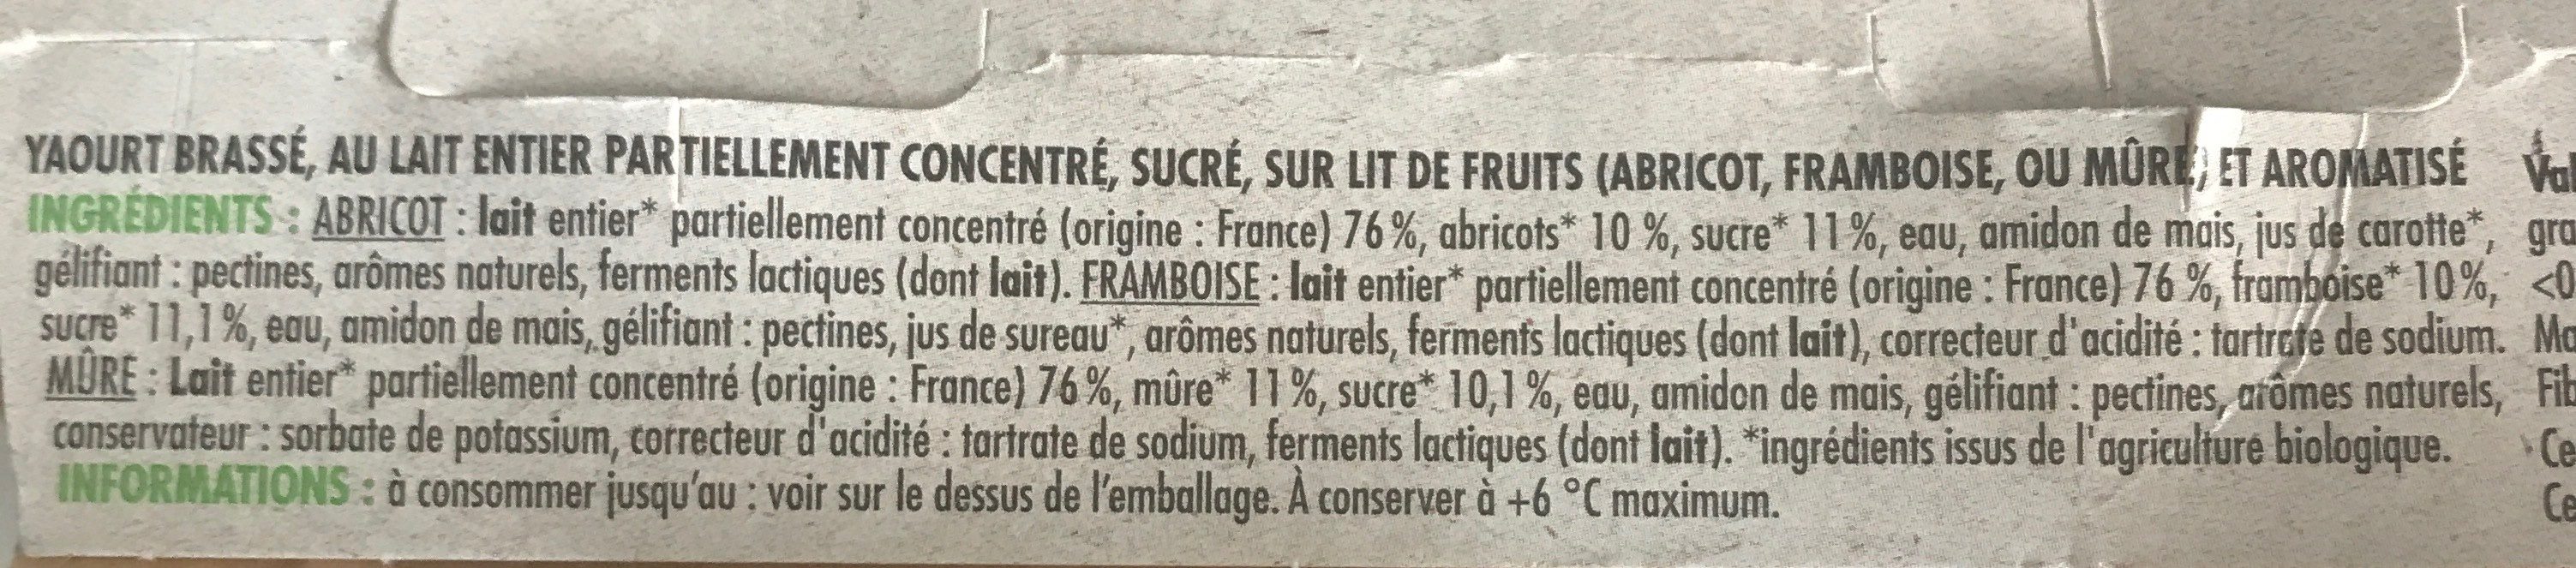 Yaourt brassé sur lit de fruits - Framboise, Abricot, Mûre - Ingredients - fr